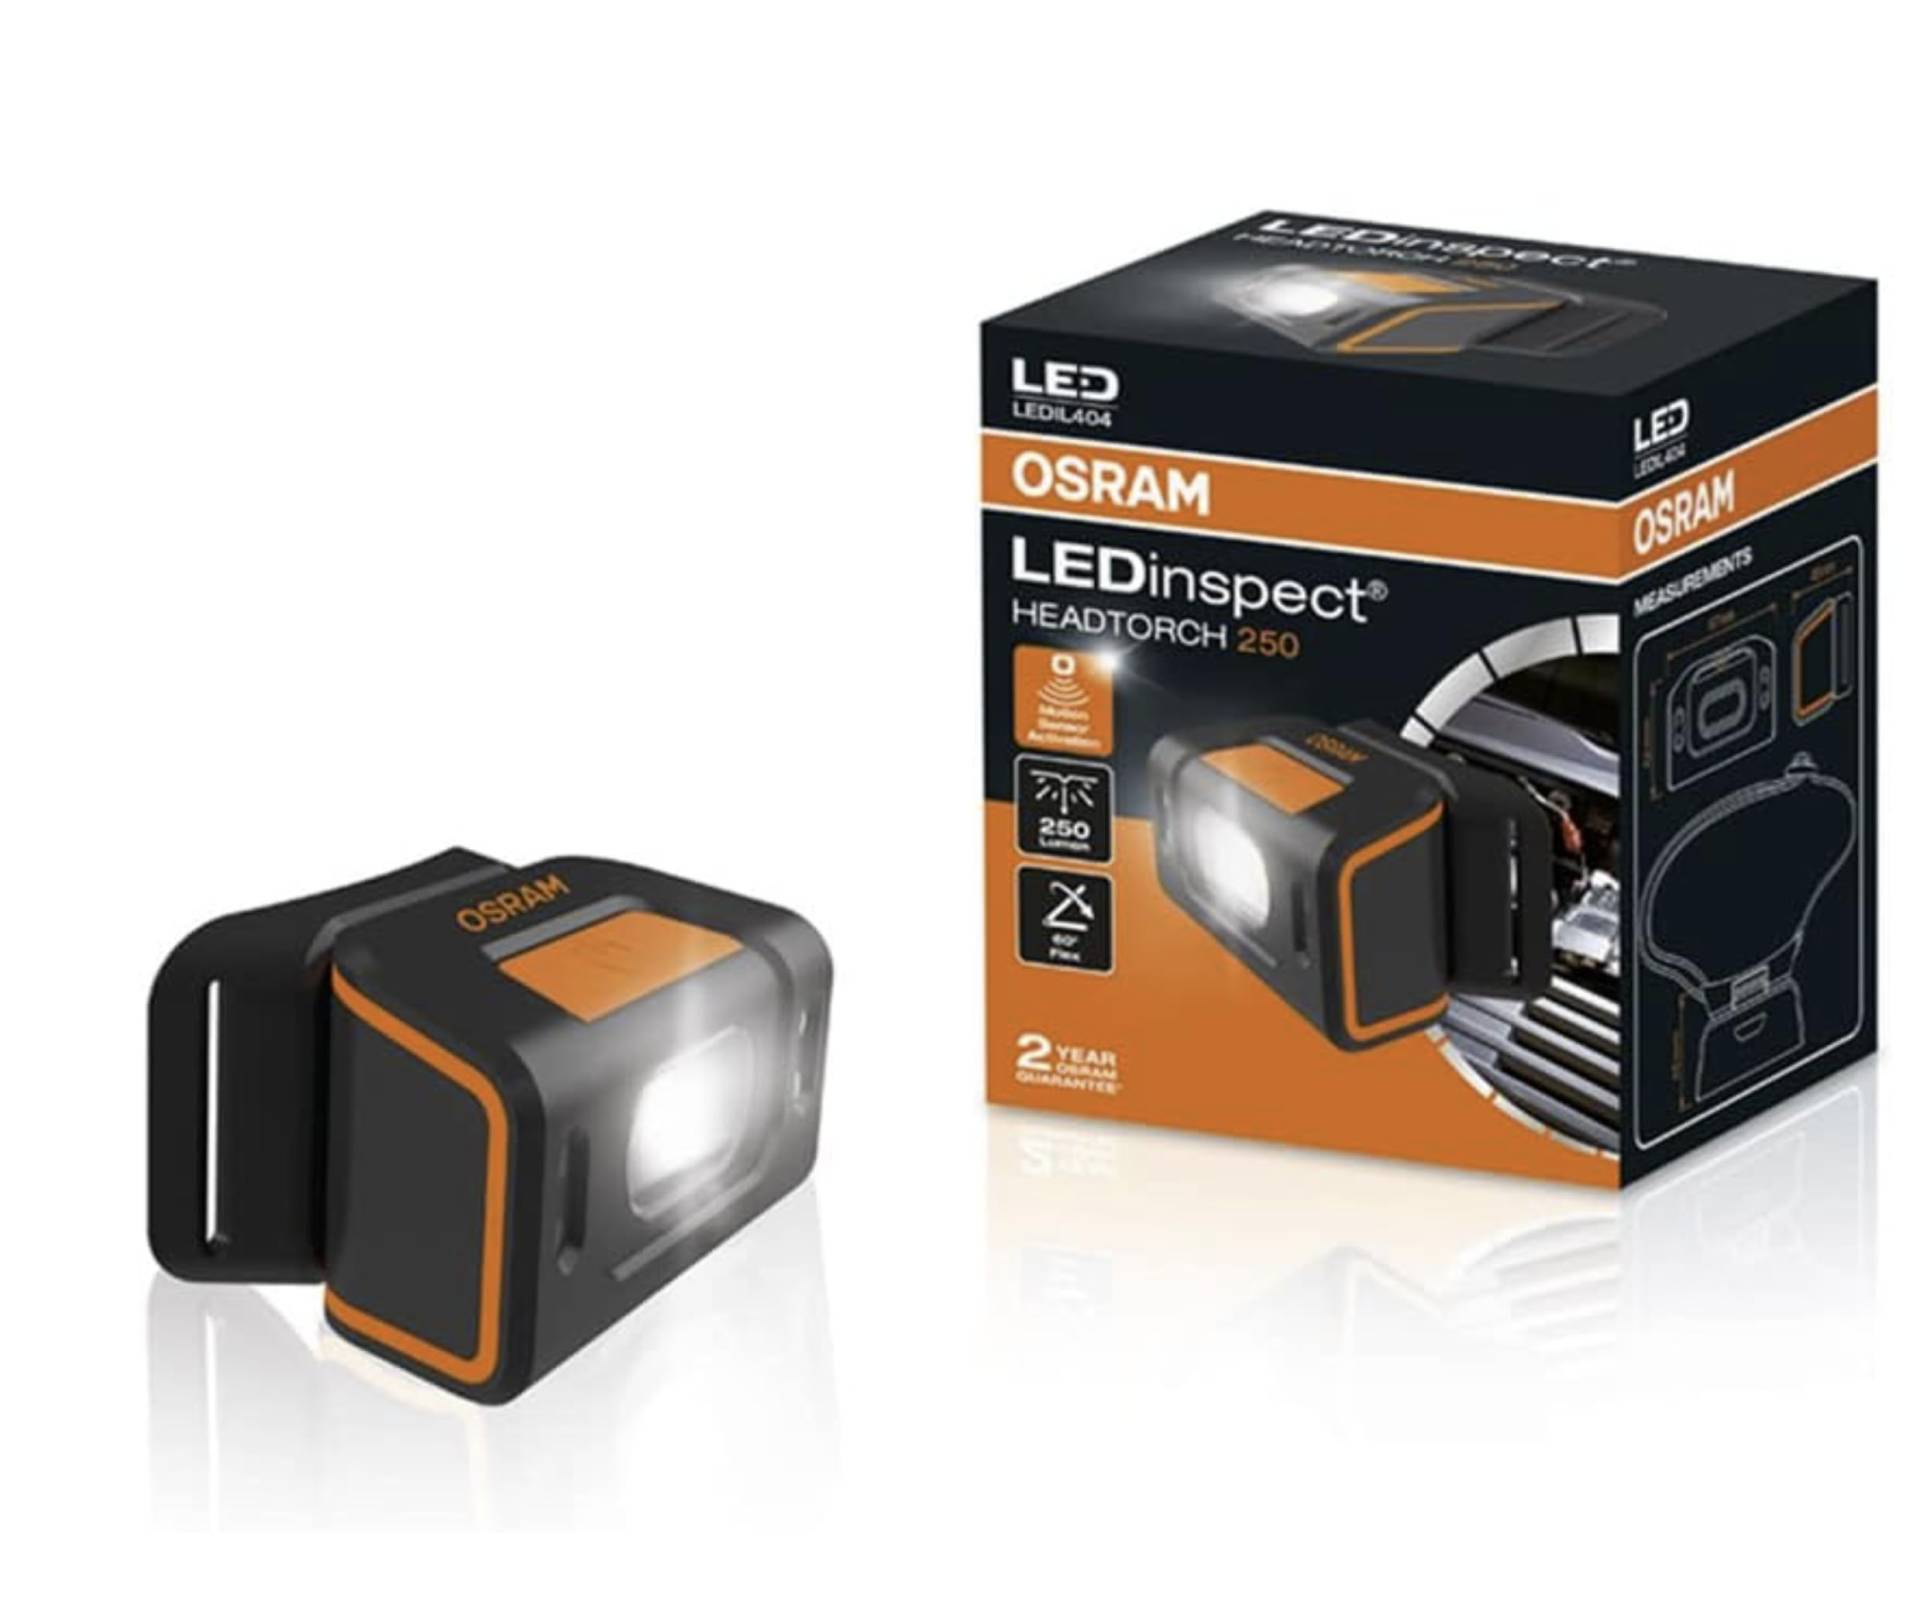 OSRAM LEDIL404 LEDinspect HEADTORCH250, Inspektionsleuchte, wiederaufladbare Stirnlampe, LED Kopflampe mit Bewegungssensorik von Osram